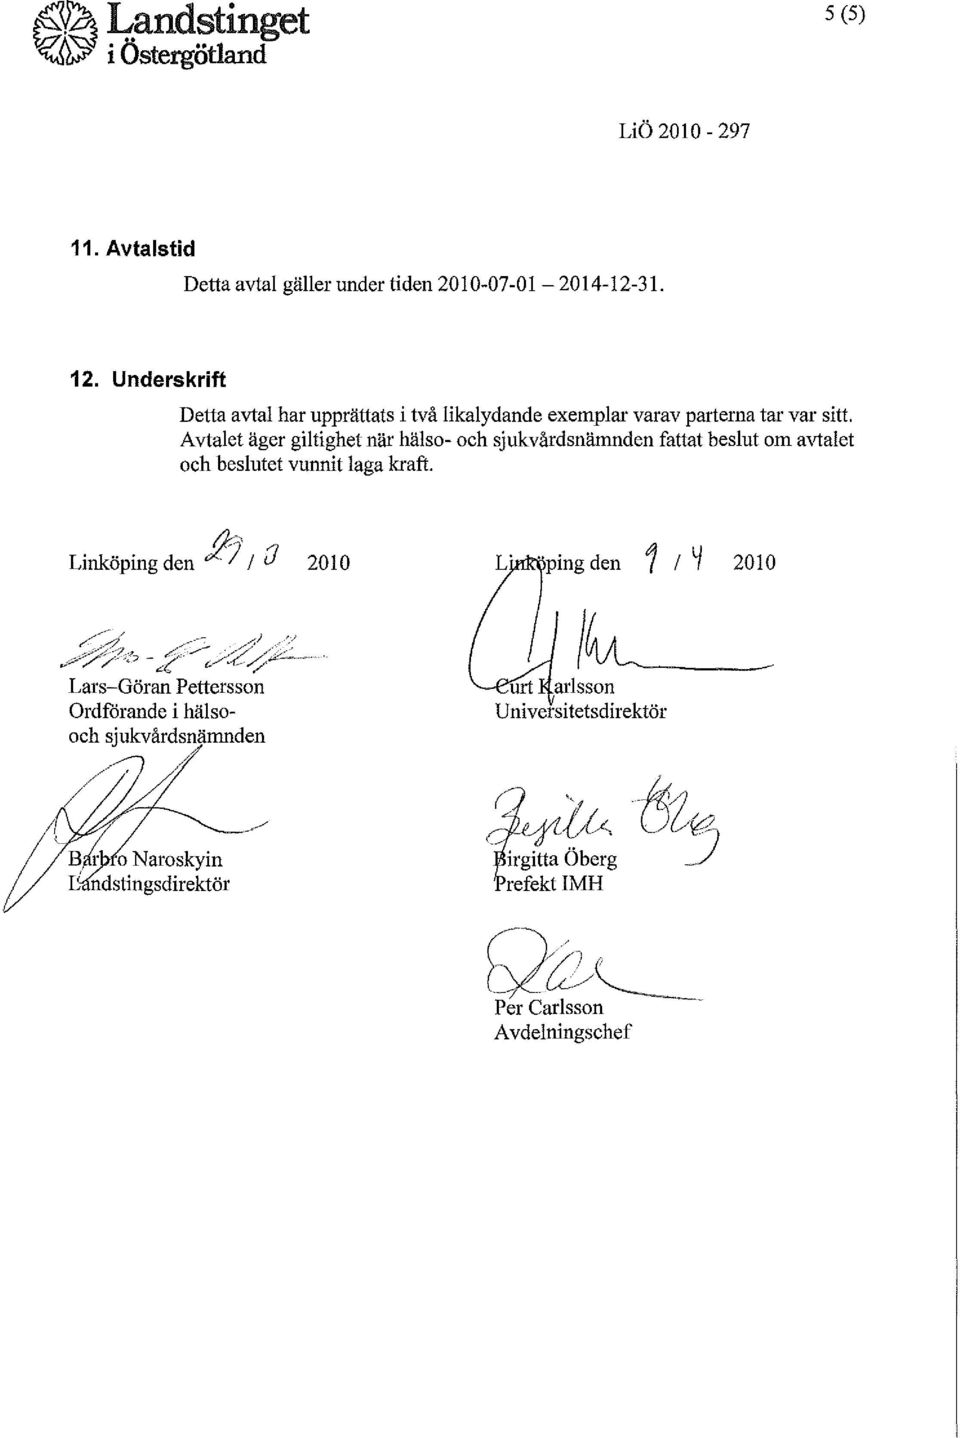 Avtalet äger giltighet när hälso- och sjukvårdsnämnden fattat beslut om avtalet och beslutet vunnit laga kraft. Linköping den fil' / (J 2010 // d.._-----;.